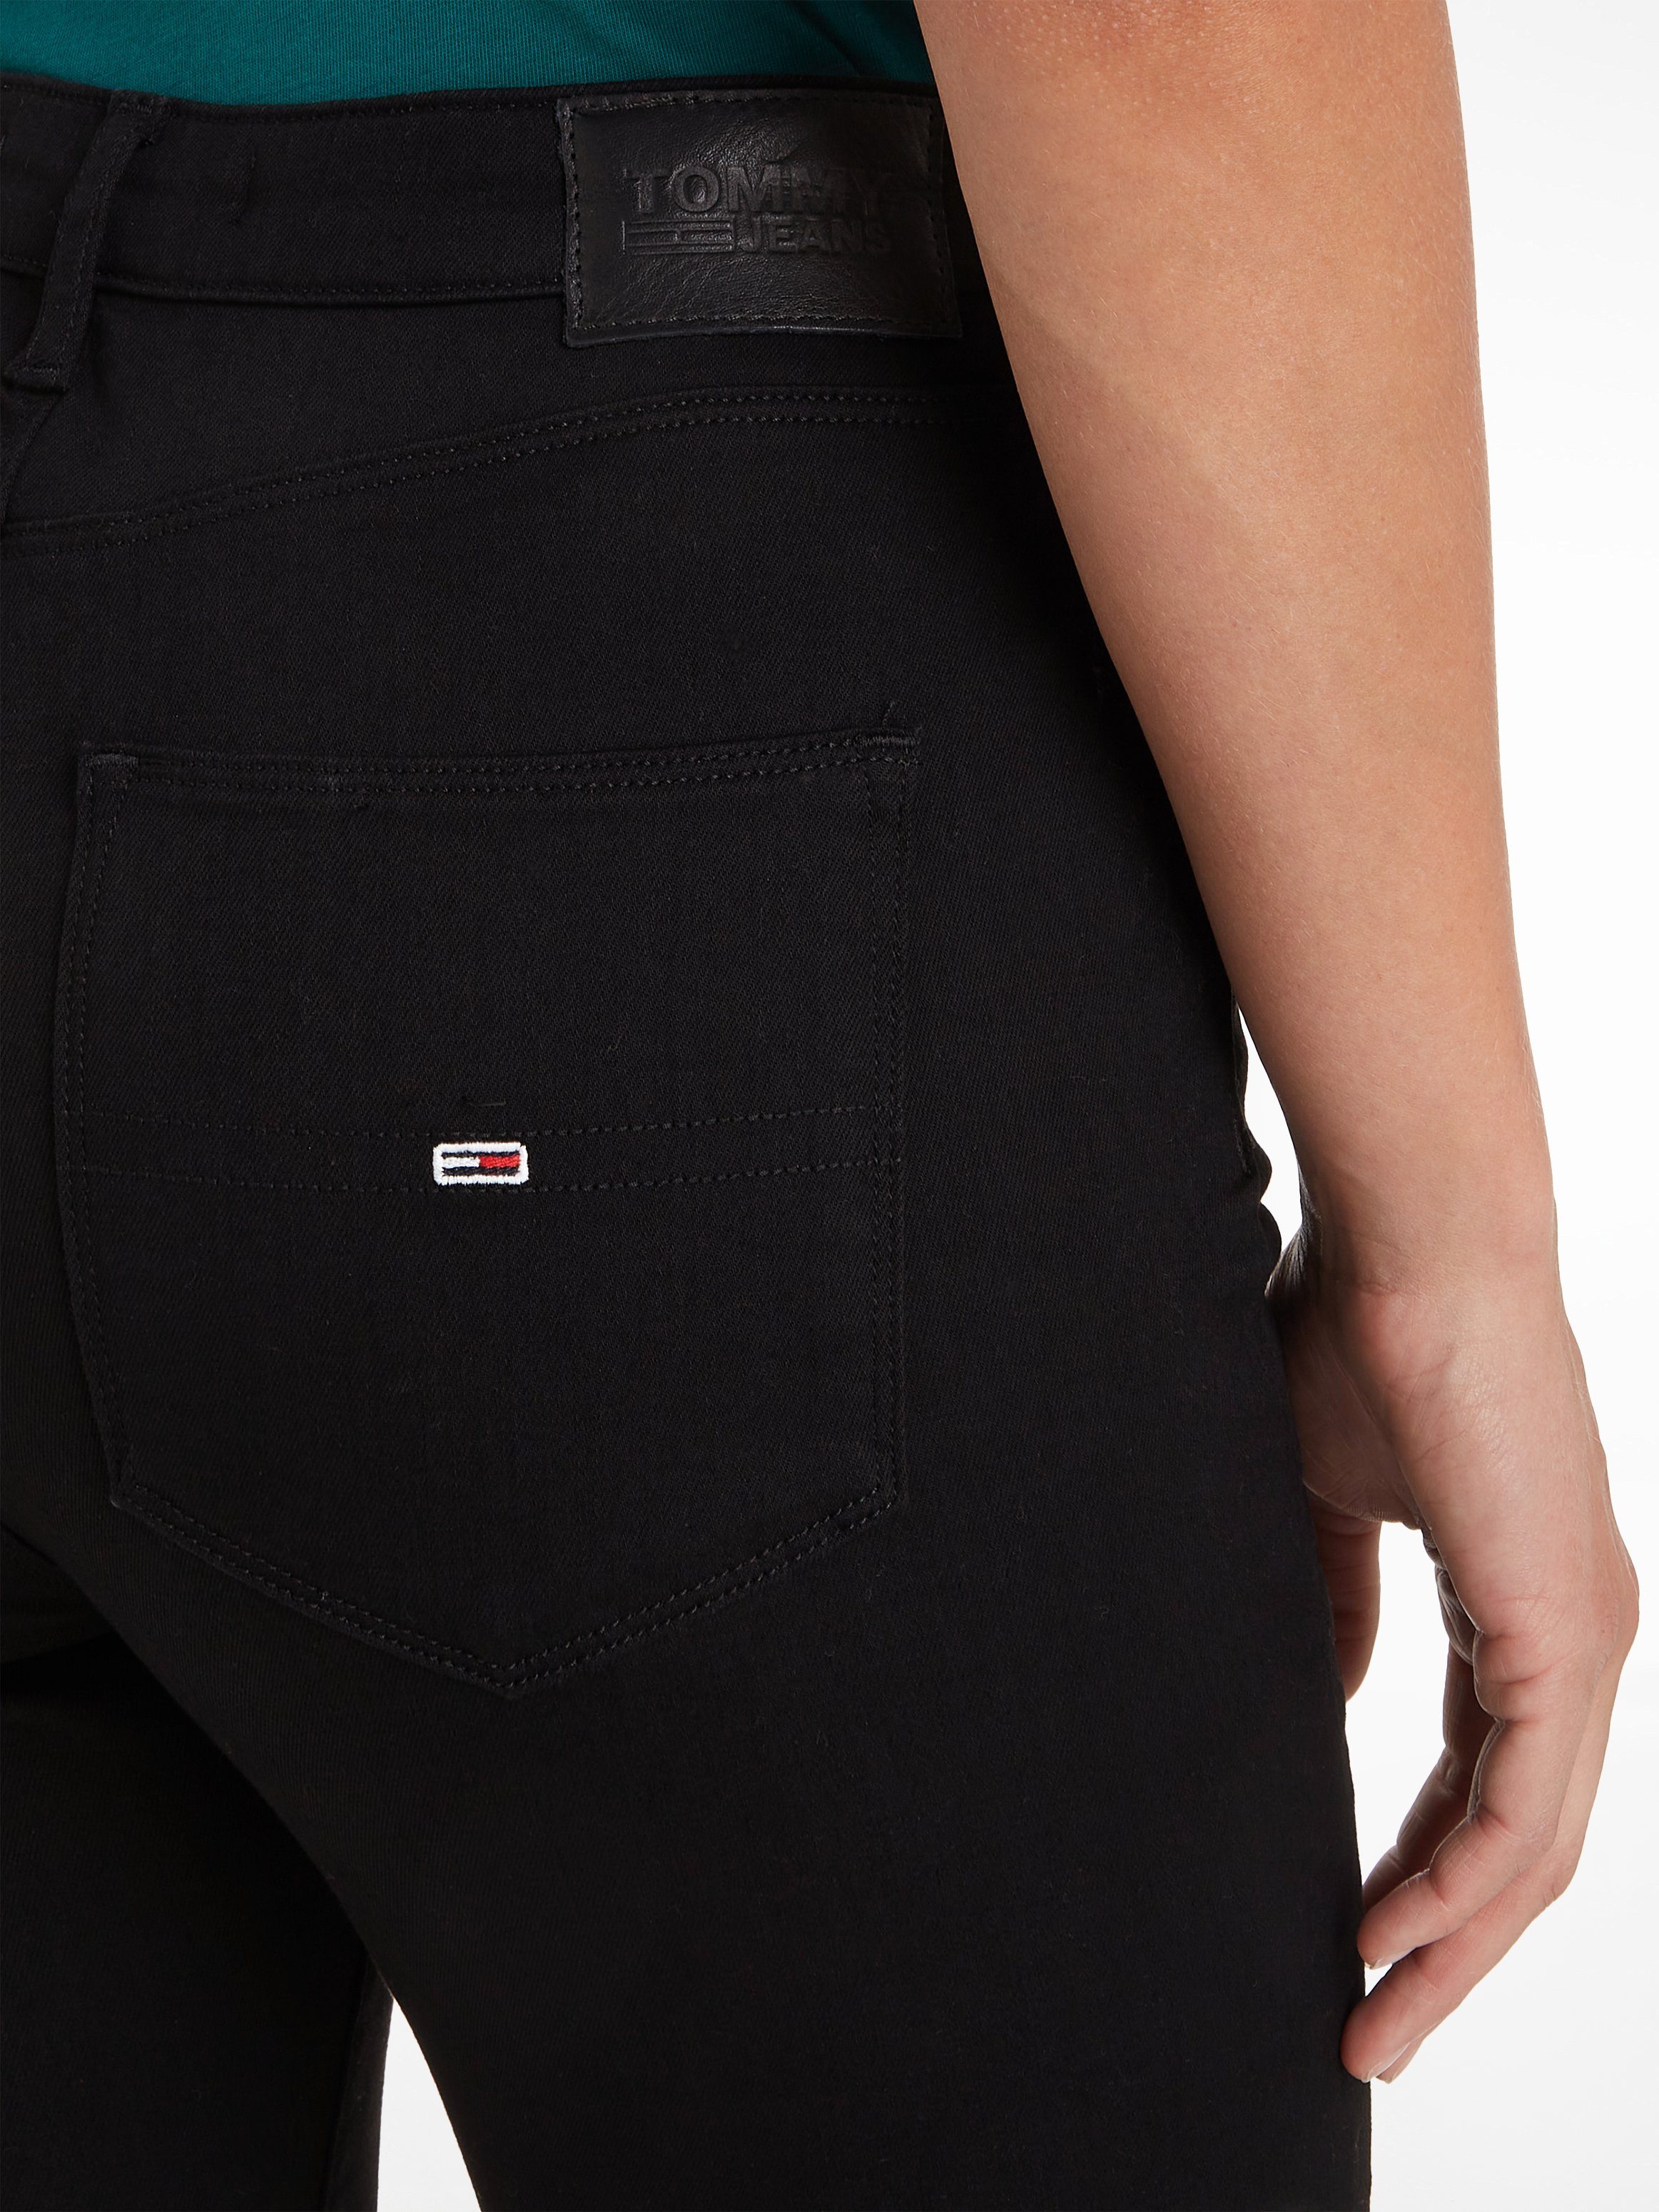 Black SKNY Skinny-fit-Jeans HR und Sitz. Hochwertige bequemen Materialien Tommy Staten perfekten SUPER SYLVIA Jeans für einen